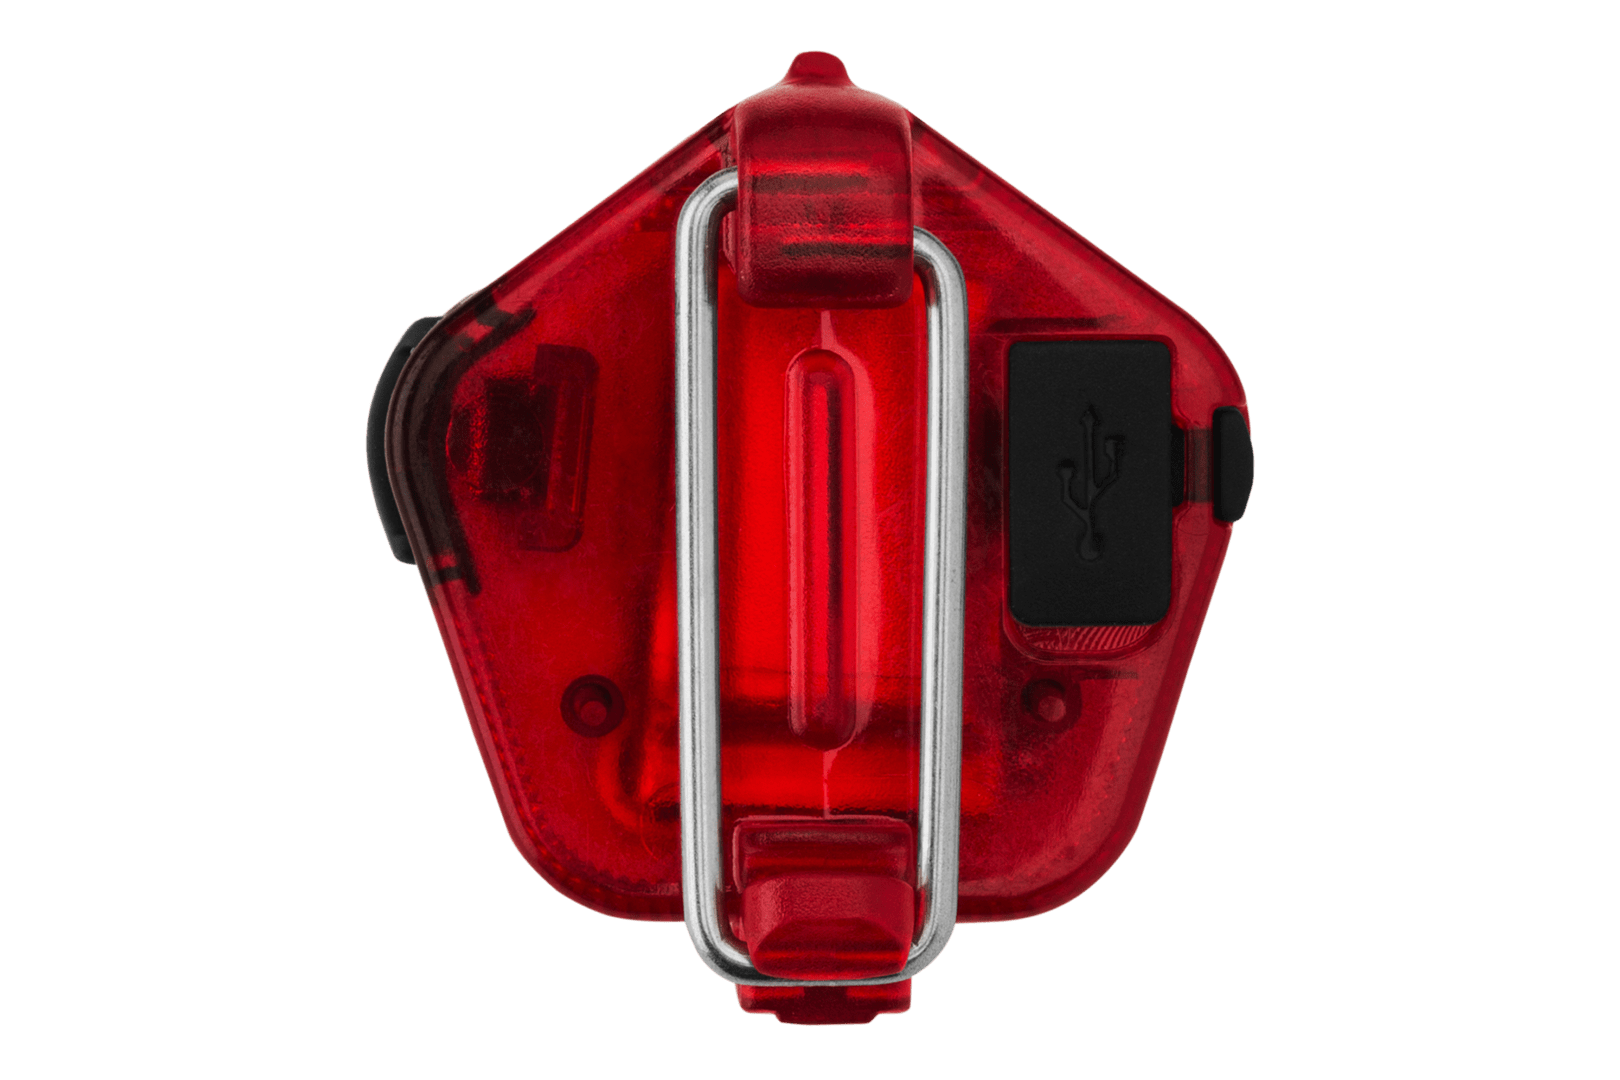 Ruffwear Audible Beacon Safety Light